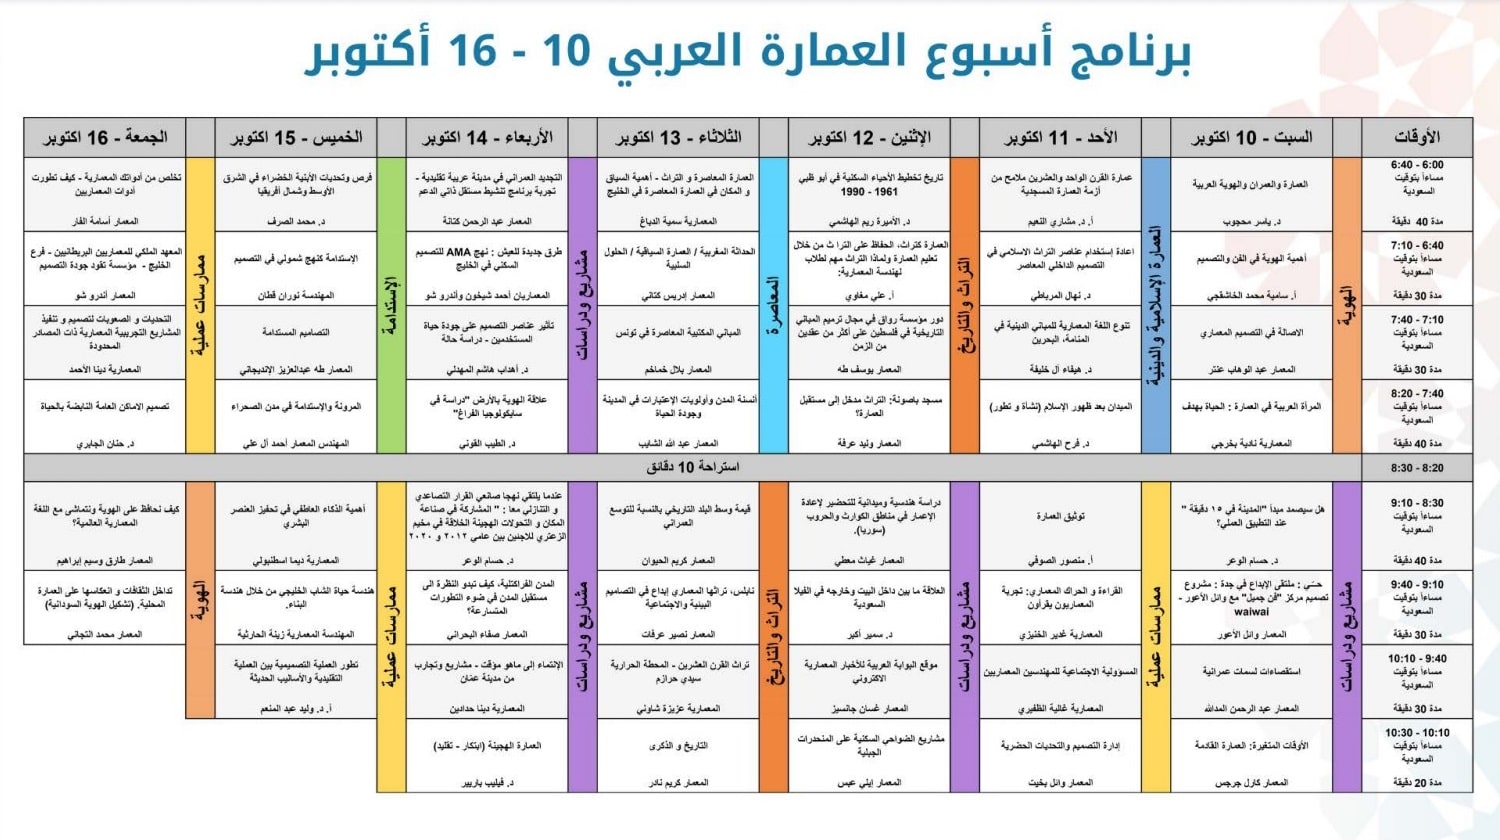 جدول محاضرات اسبوع العمارة العربي